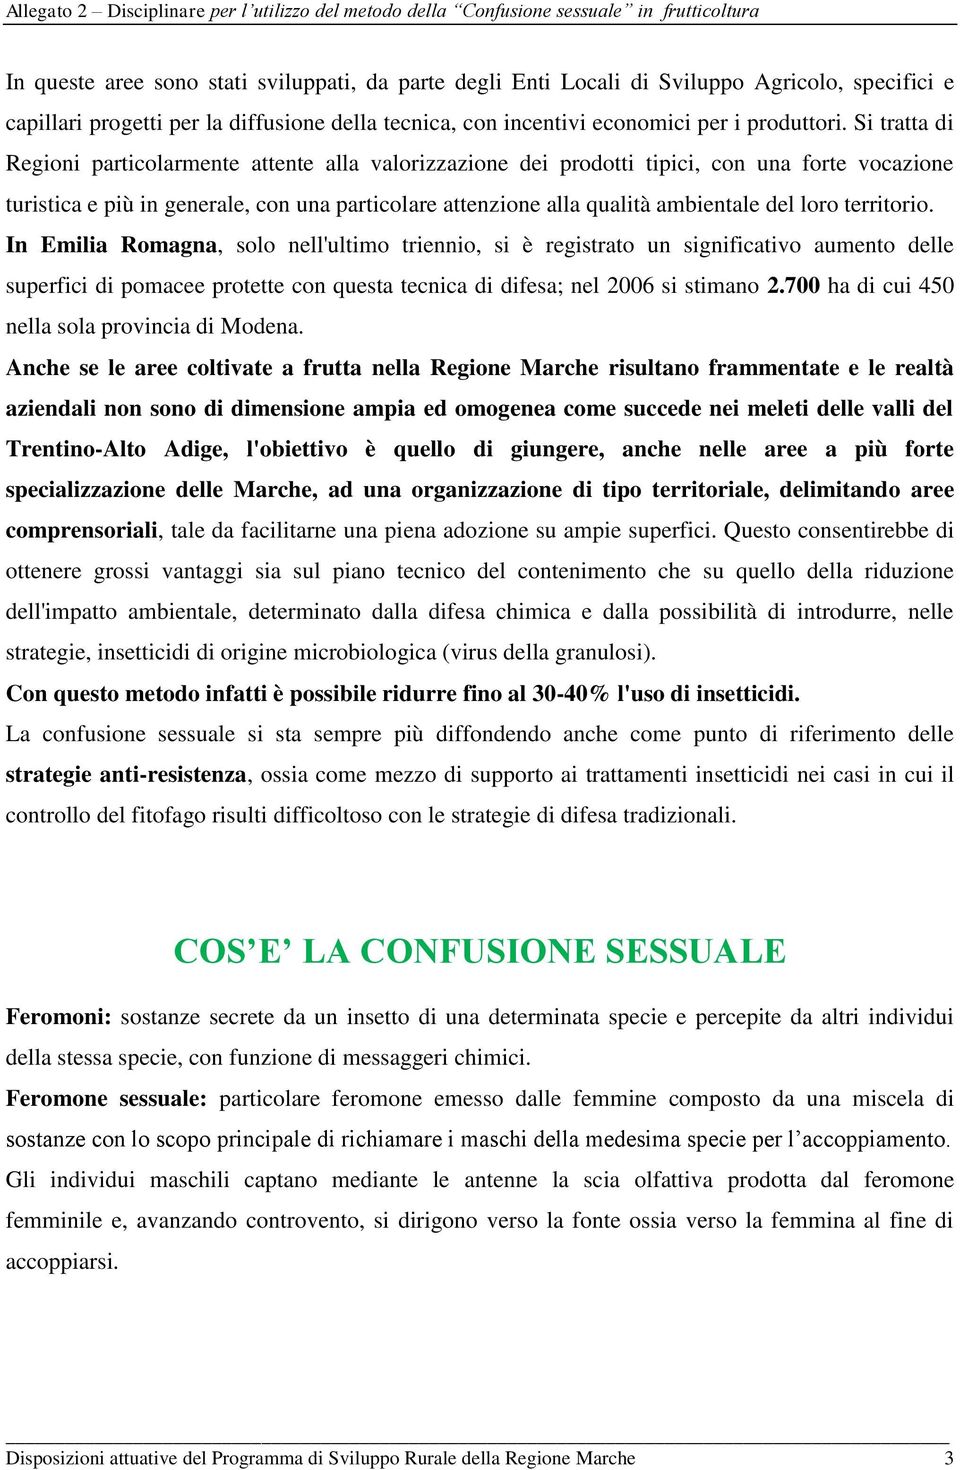 loro territorio. In Emilia Romagna, solo nell'ultimo triennio, si è registrato un significativo aumento delle superfici di pomacee protette con questa tecnica di difesa; nel 2006 si stimano 2.